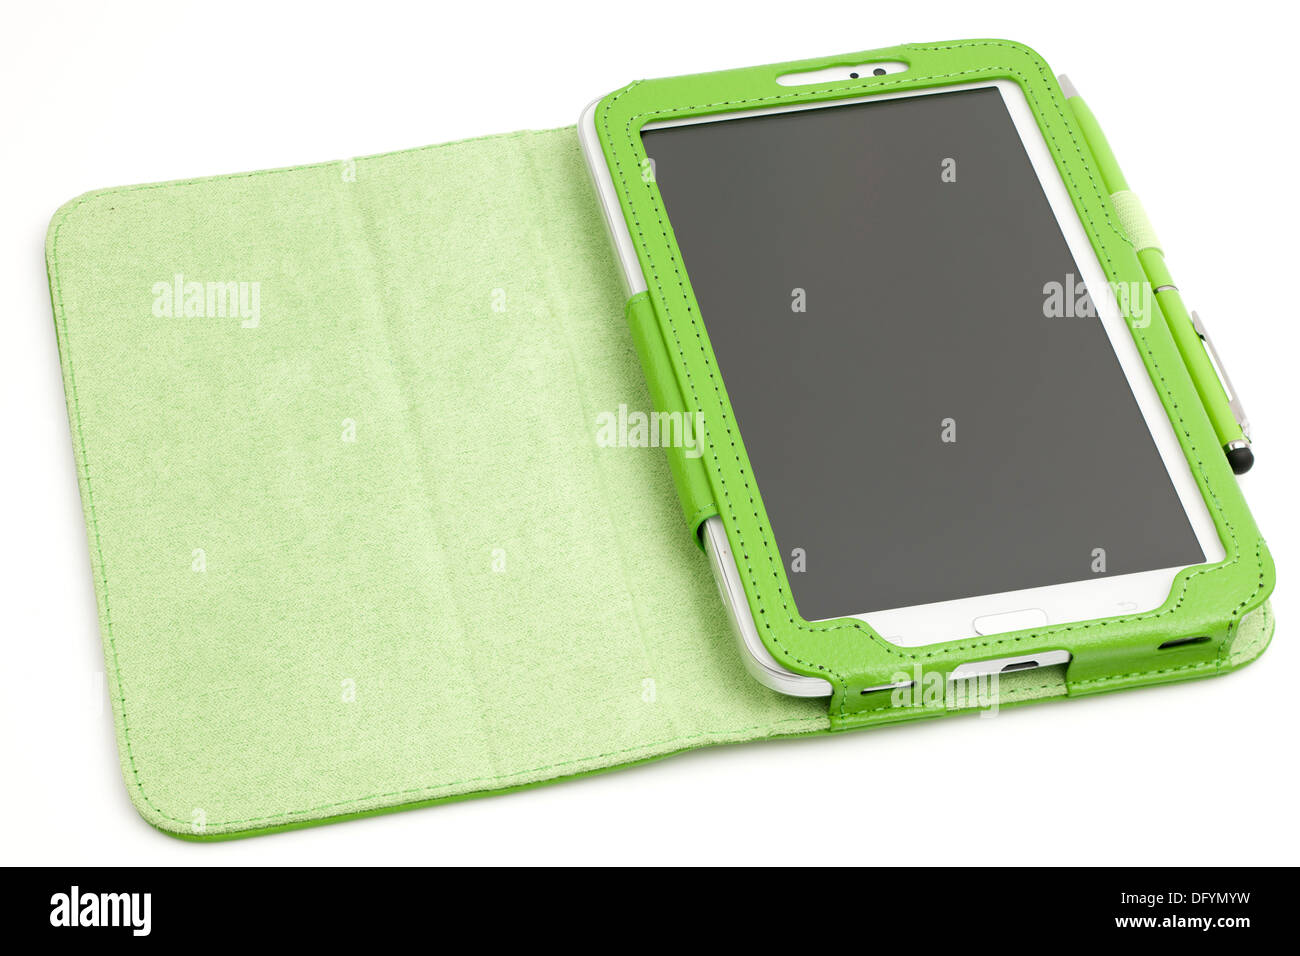 Samsung Galaxy 7 Tab 3-Zoll-Tablet mit Schutzhülle und Stift  Stockfotografie - Alamy